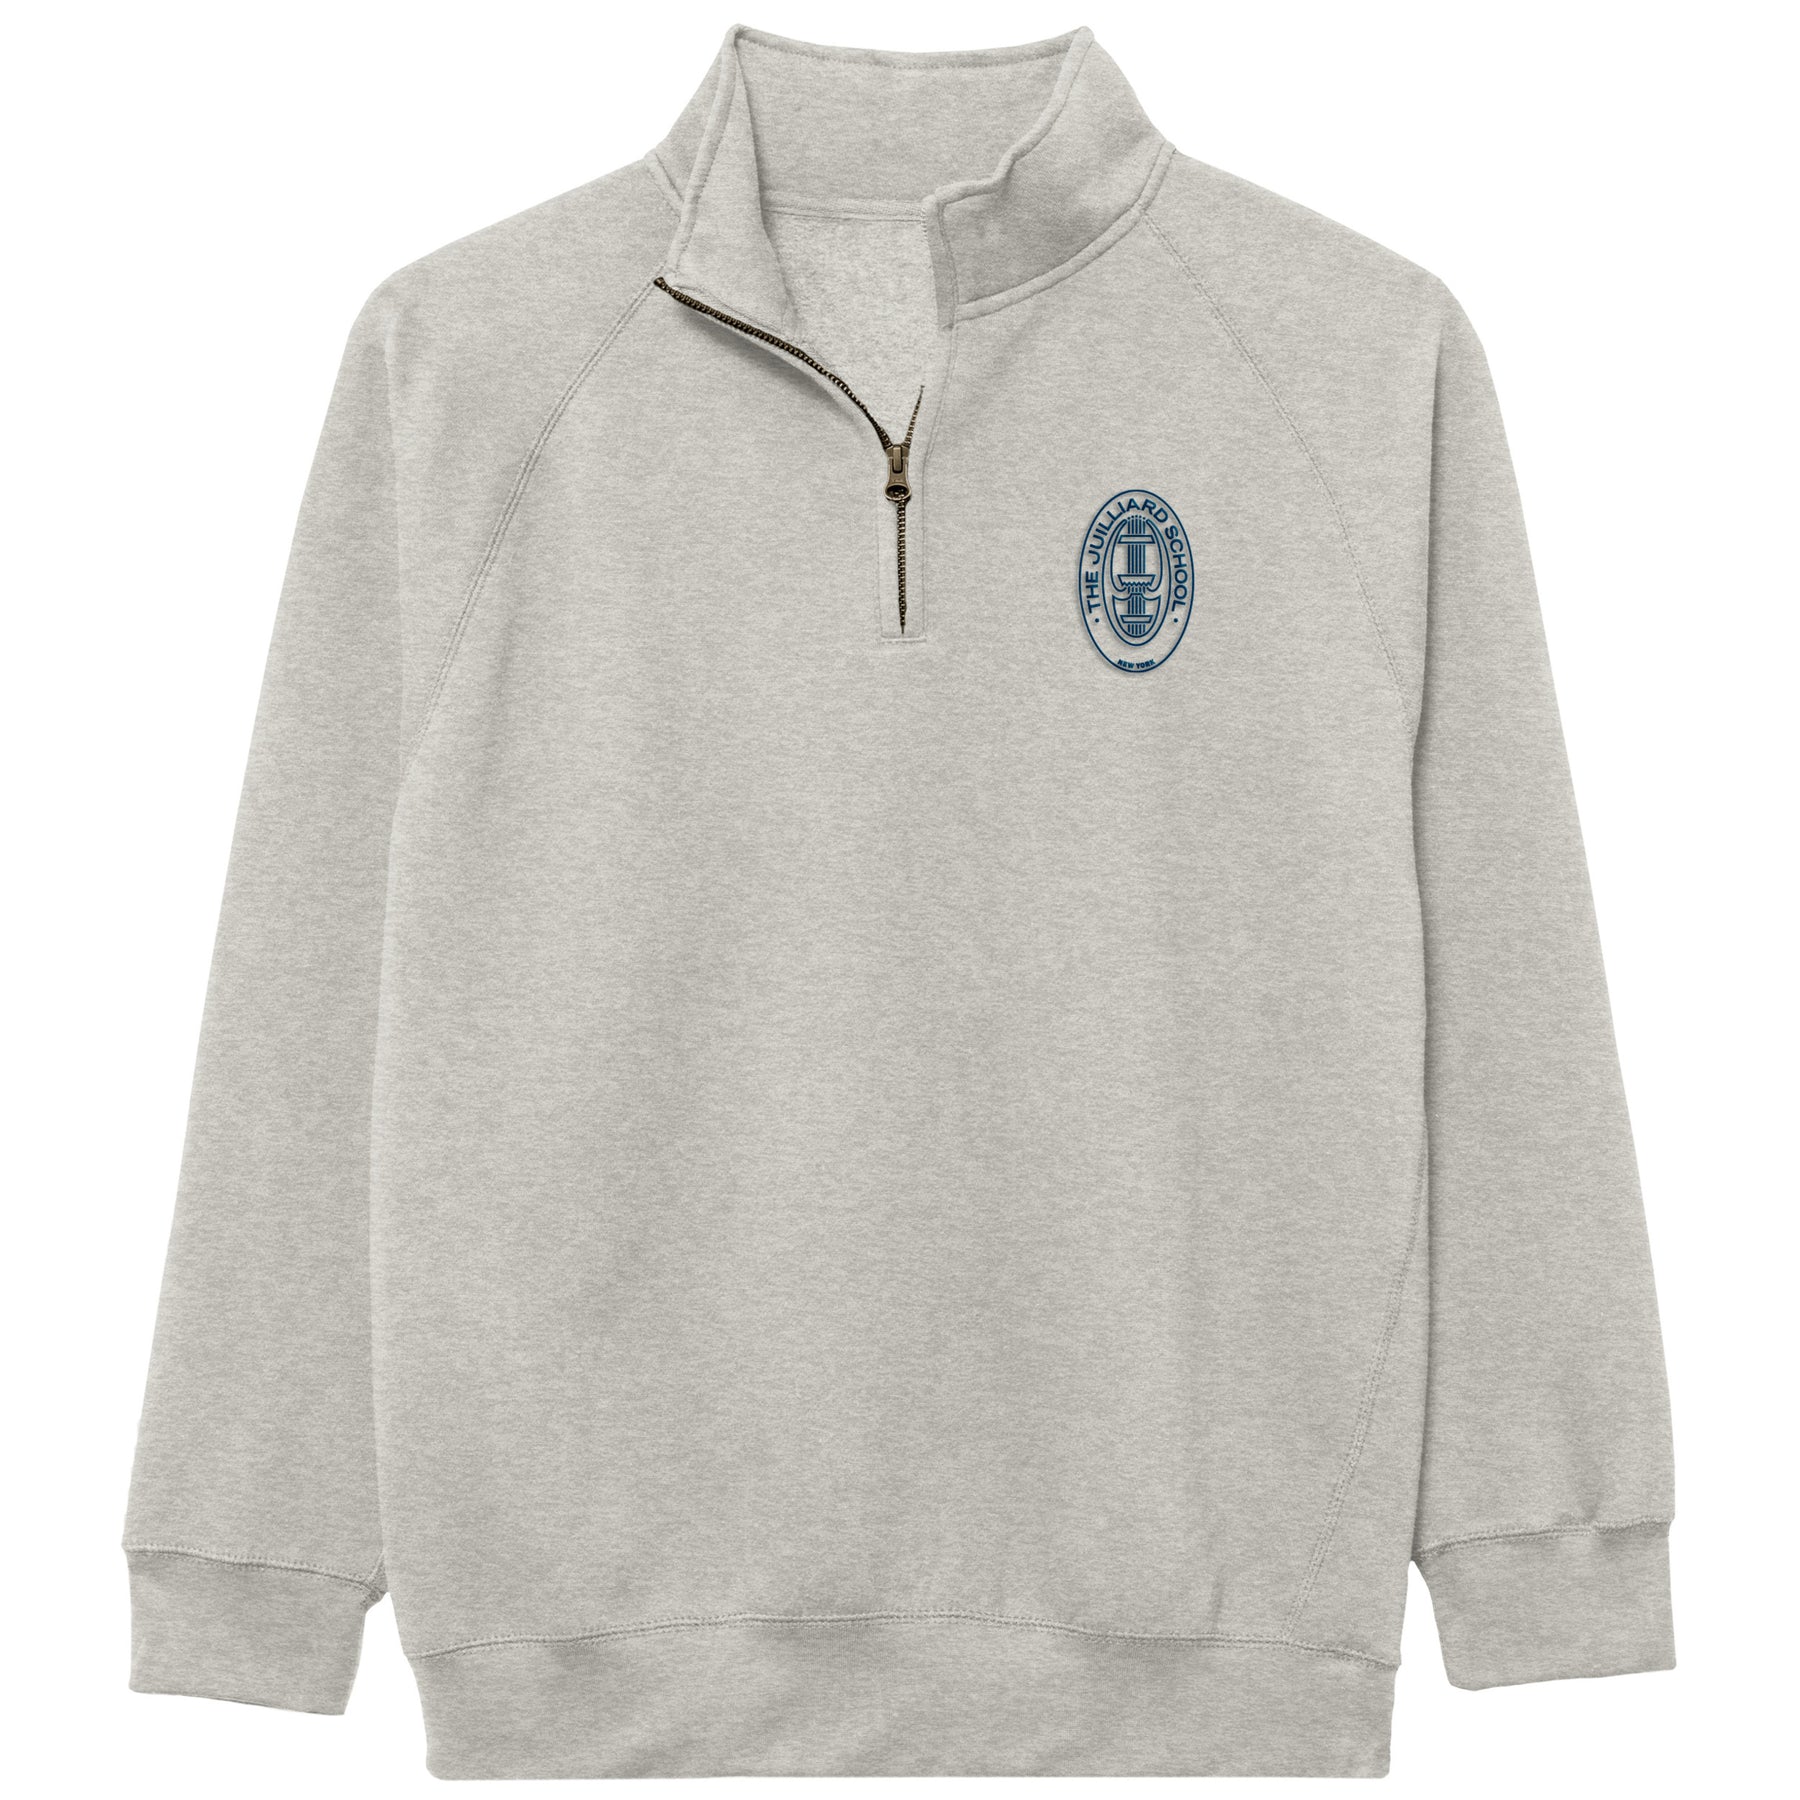 Sweatshirt: Benchmark Quarter Zip in Gray with screenprint seal